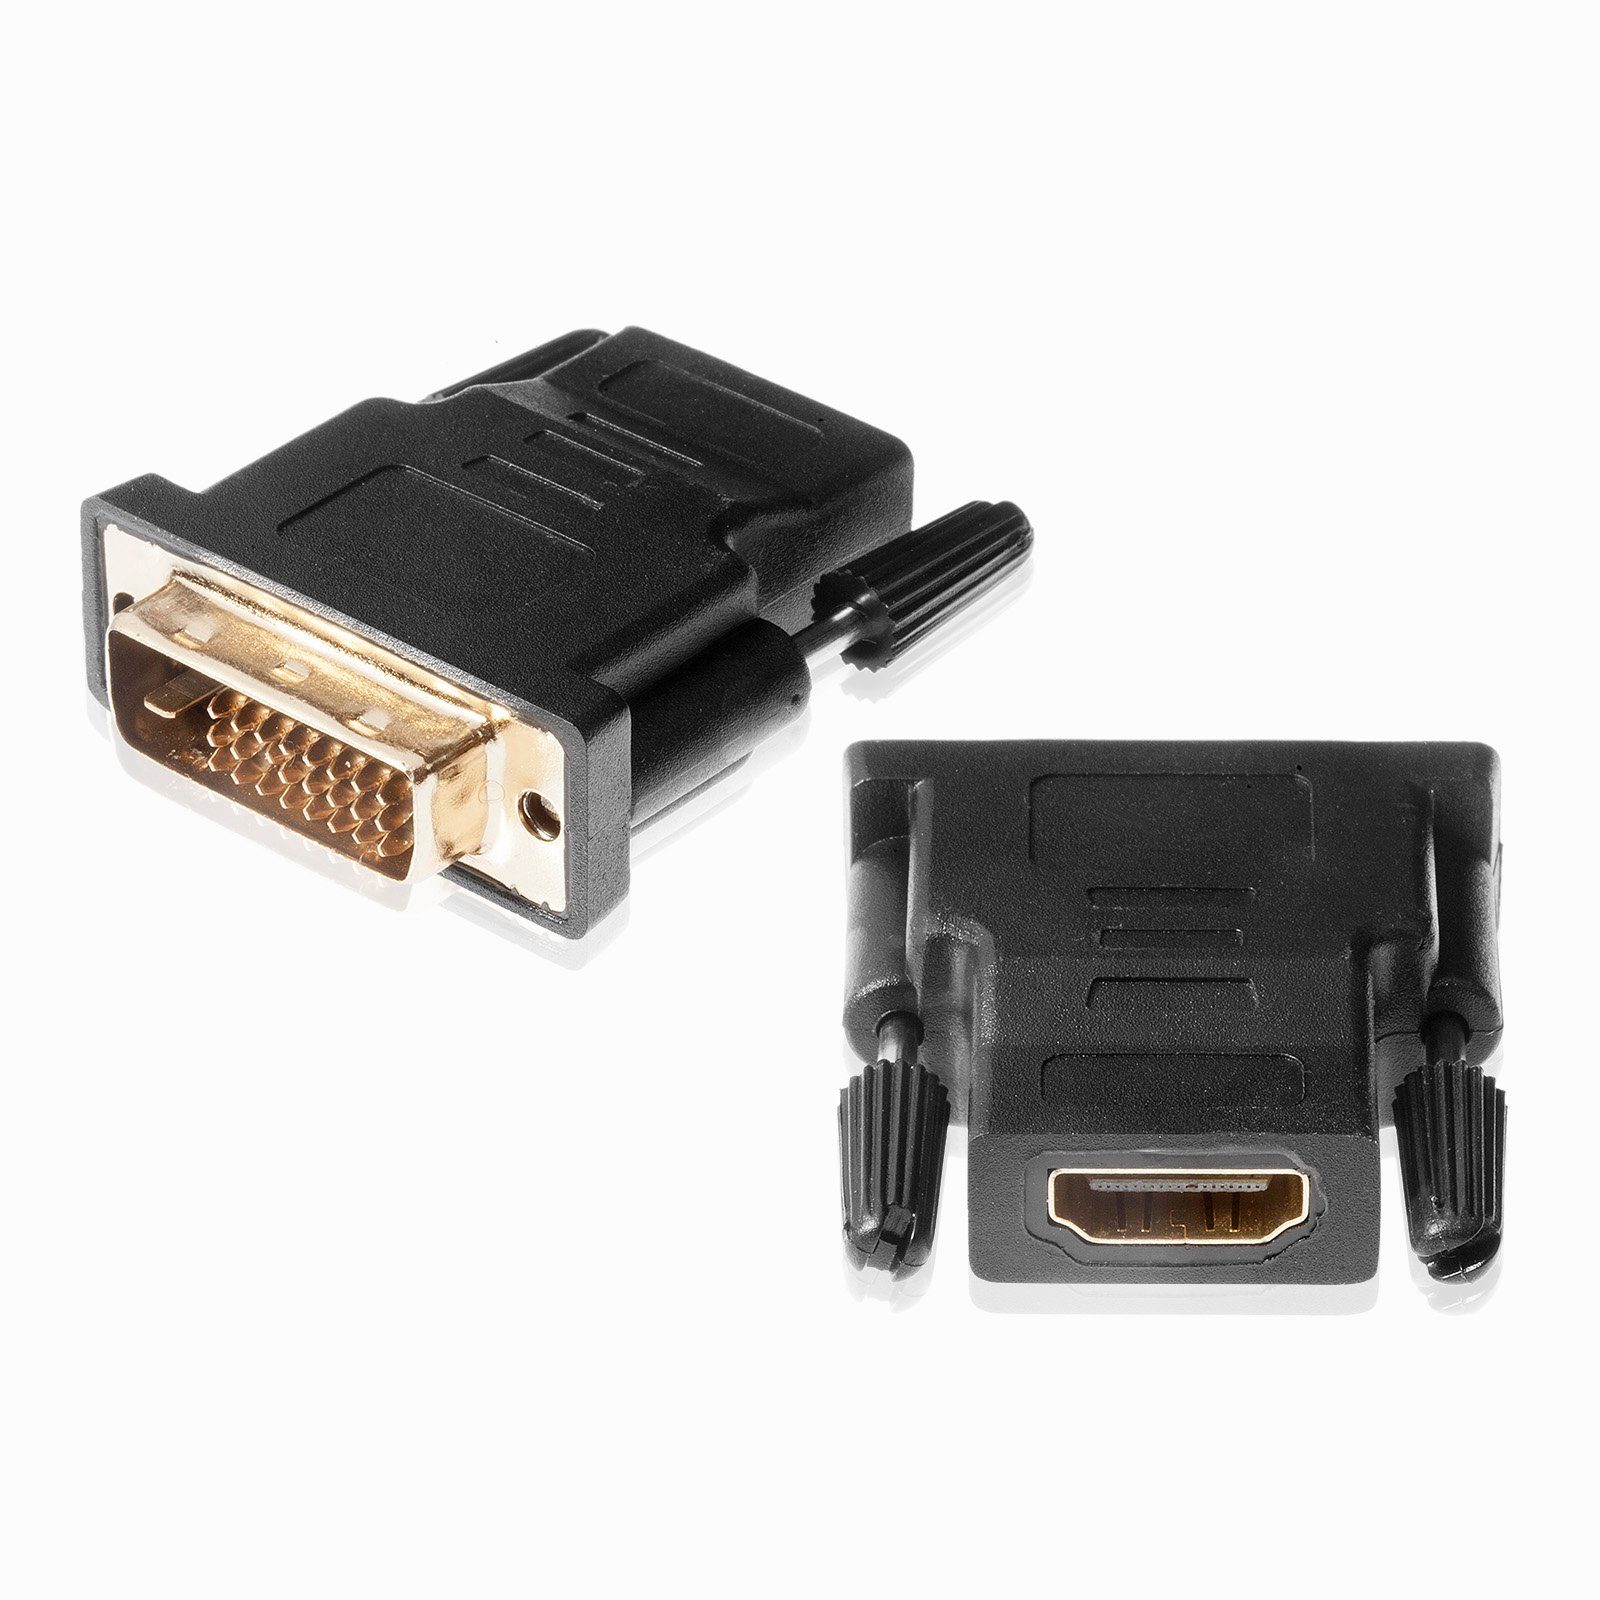 Poppstar Адаптери (HDMI Buchse auf DVI-D Stecker 24+1 Pin) HDMI-Adapter DVI-D zu HDMI, 1x für Anschluss von HDMI-Kabel an TV und Monitor, vergoldete Kontakte